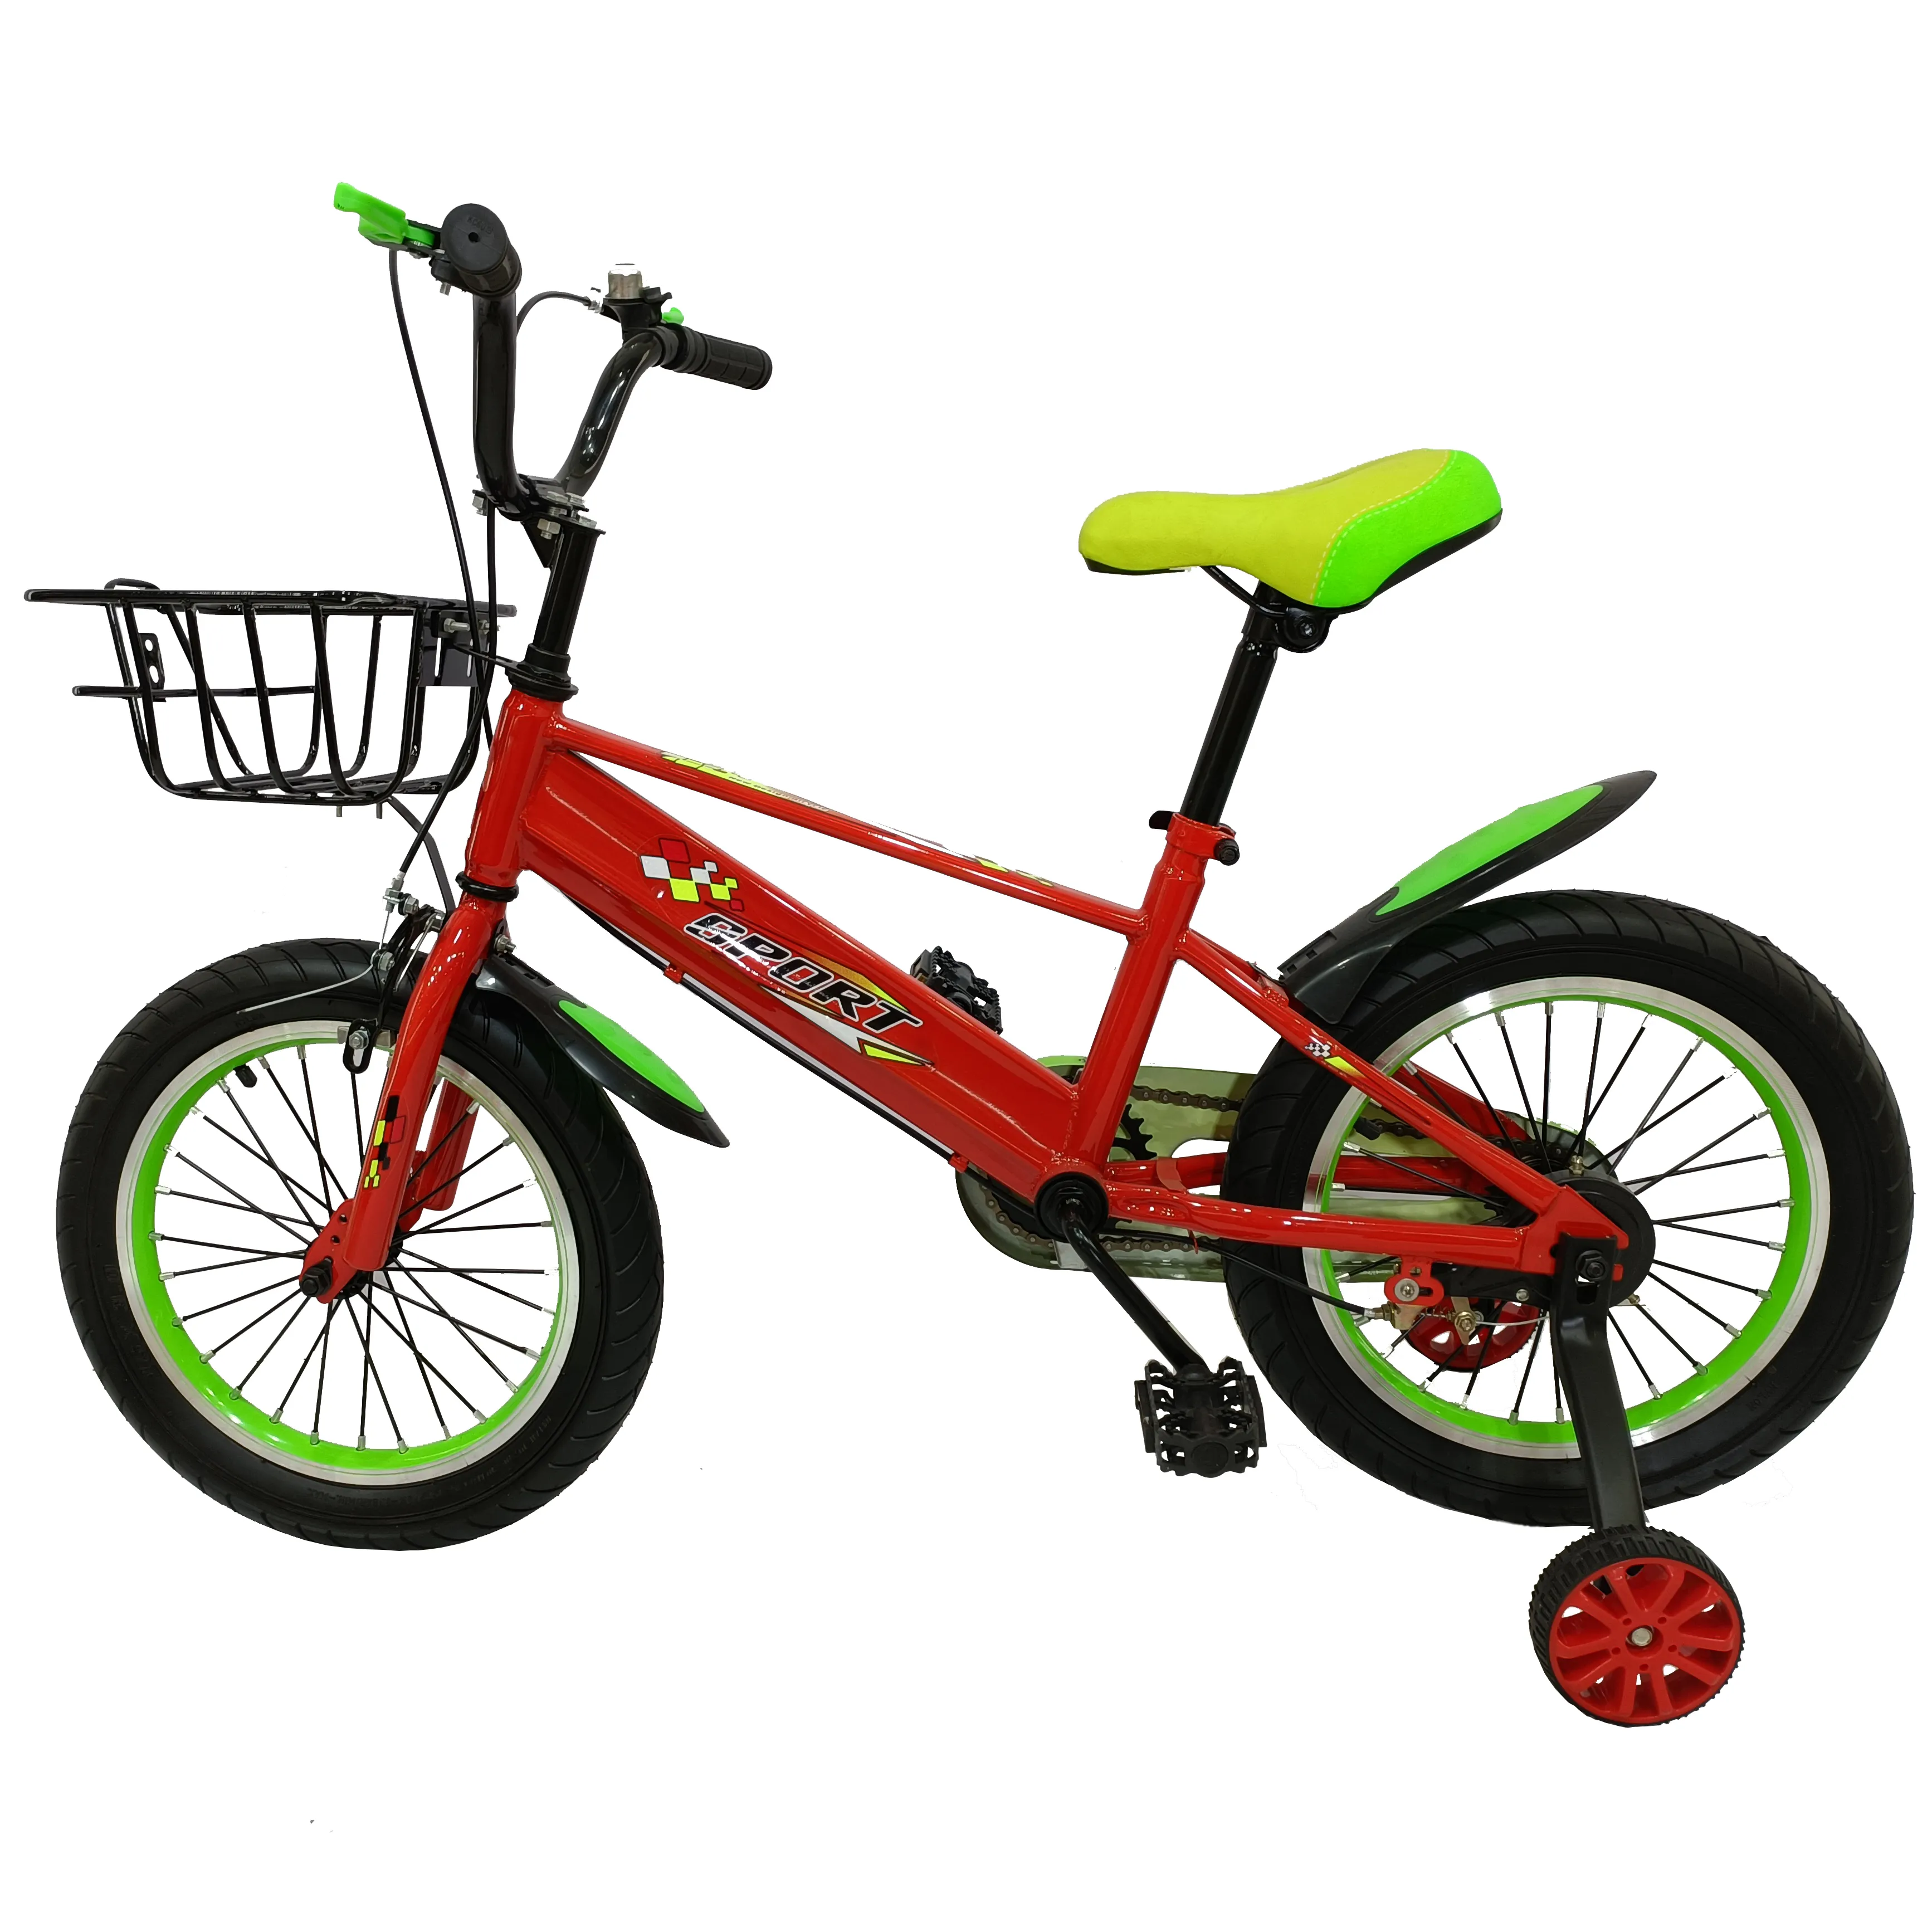 Nuovo modello prezzo di fabbrica OEM bici bambino mini bici bici 12 pollici per bambini bicicletta